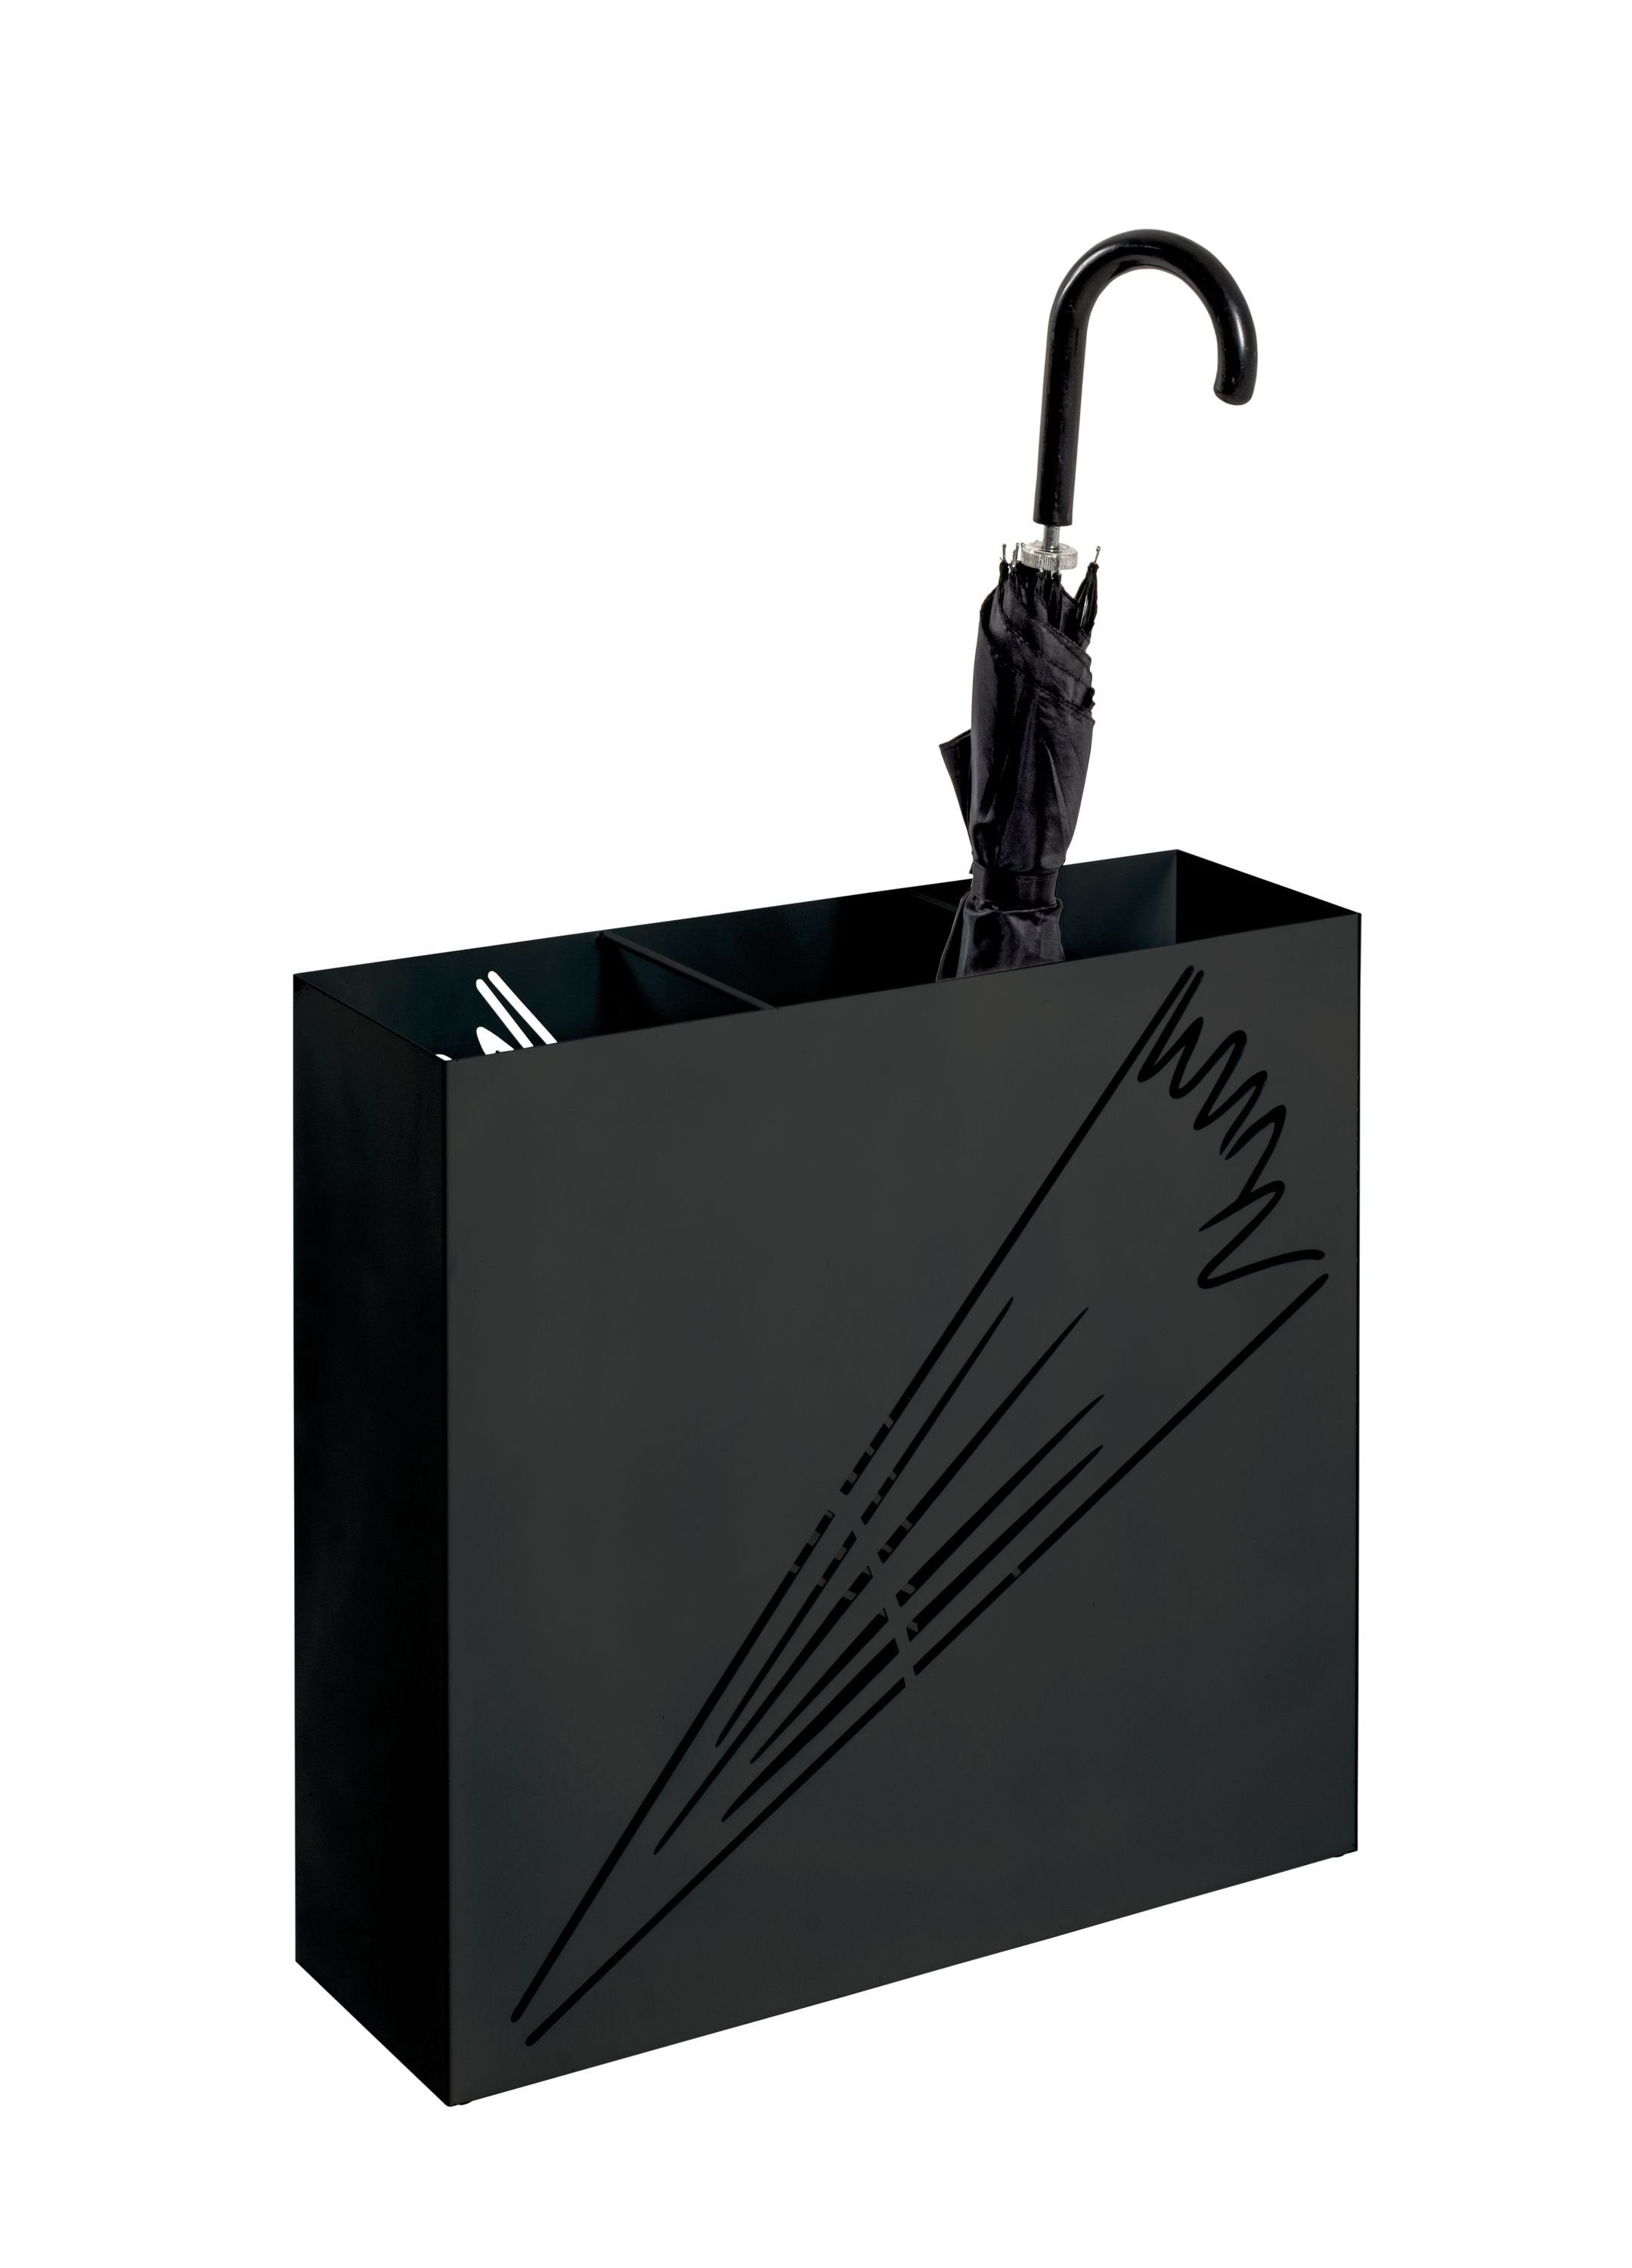 Möbel schwarz cm) cm Schirmständer, HAKU BHT 50x48x16 (BHT Schirmständer HAKU 50x48x16 Schirmständer